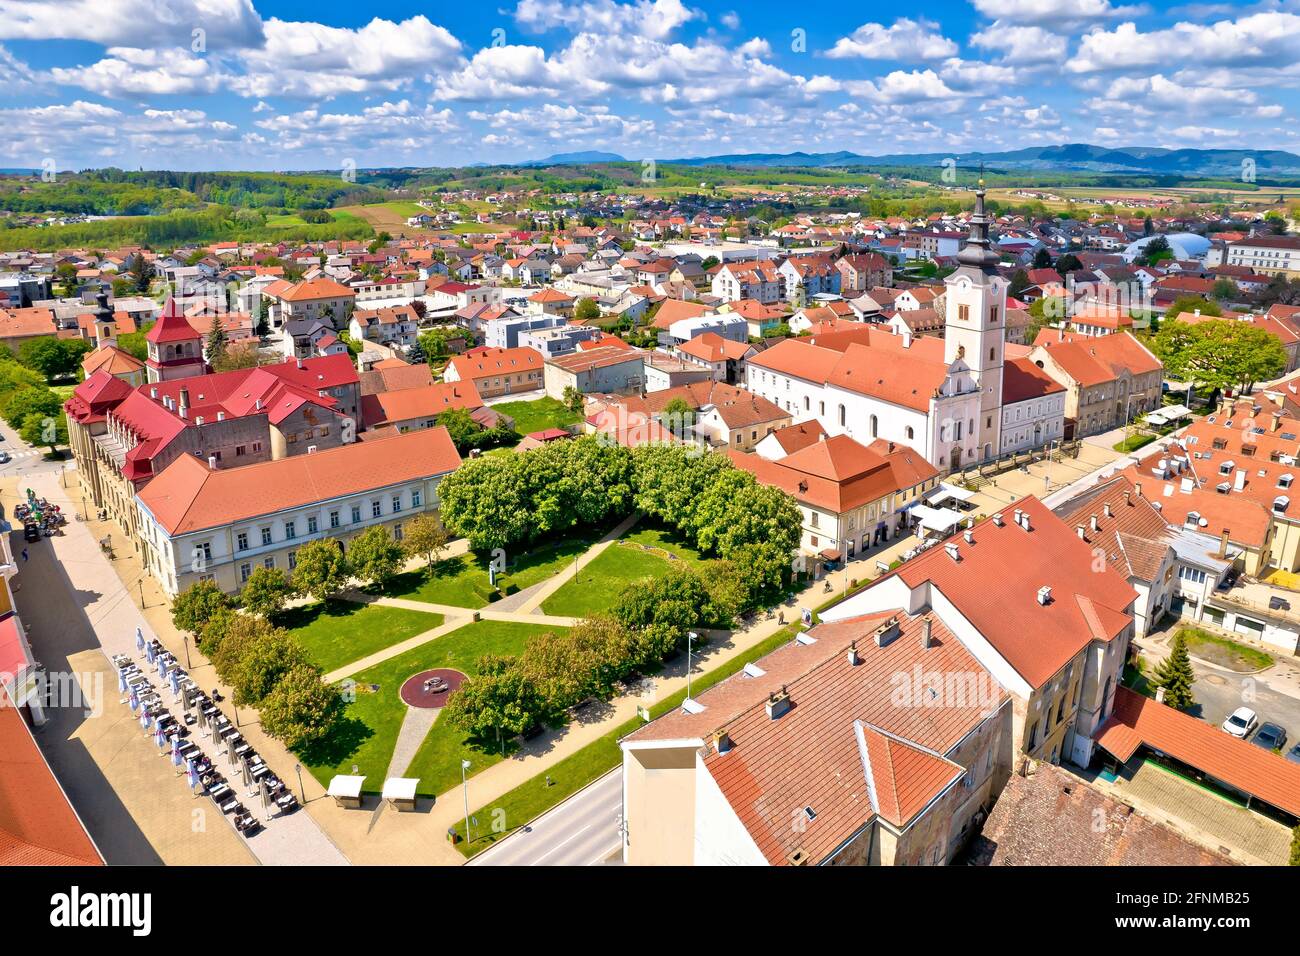 Colorata città medievale di Krizevci centro storico vista aerea, regione Prigorje della Croazia Foto Stock